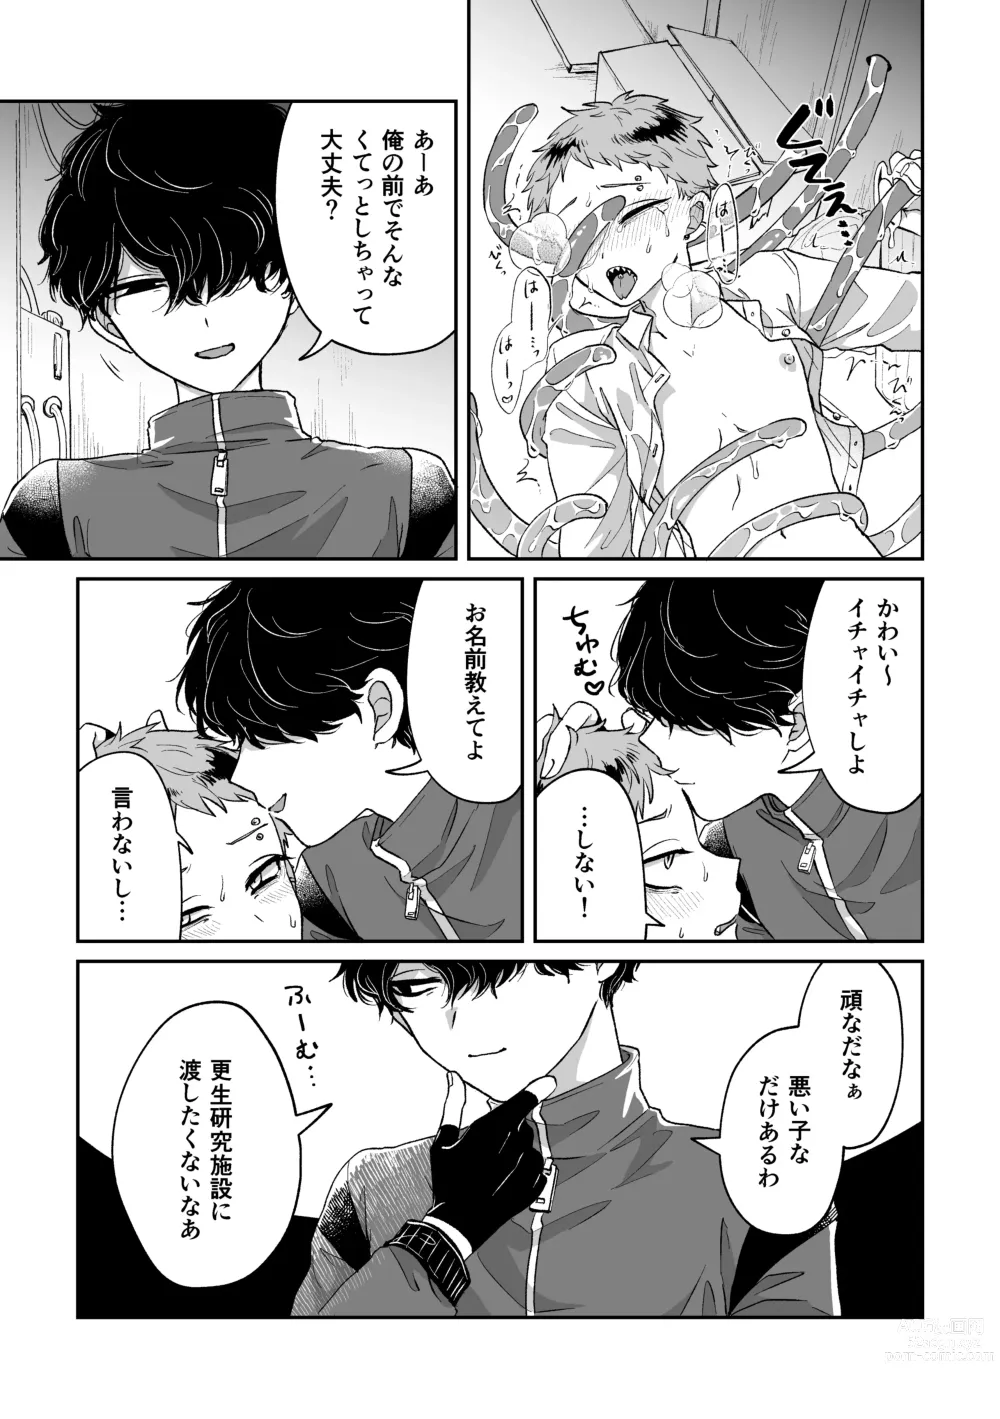 Page 28 of doujinshi Warui kedo Kore Ero Manga nanda yo ne